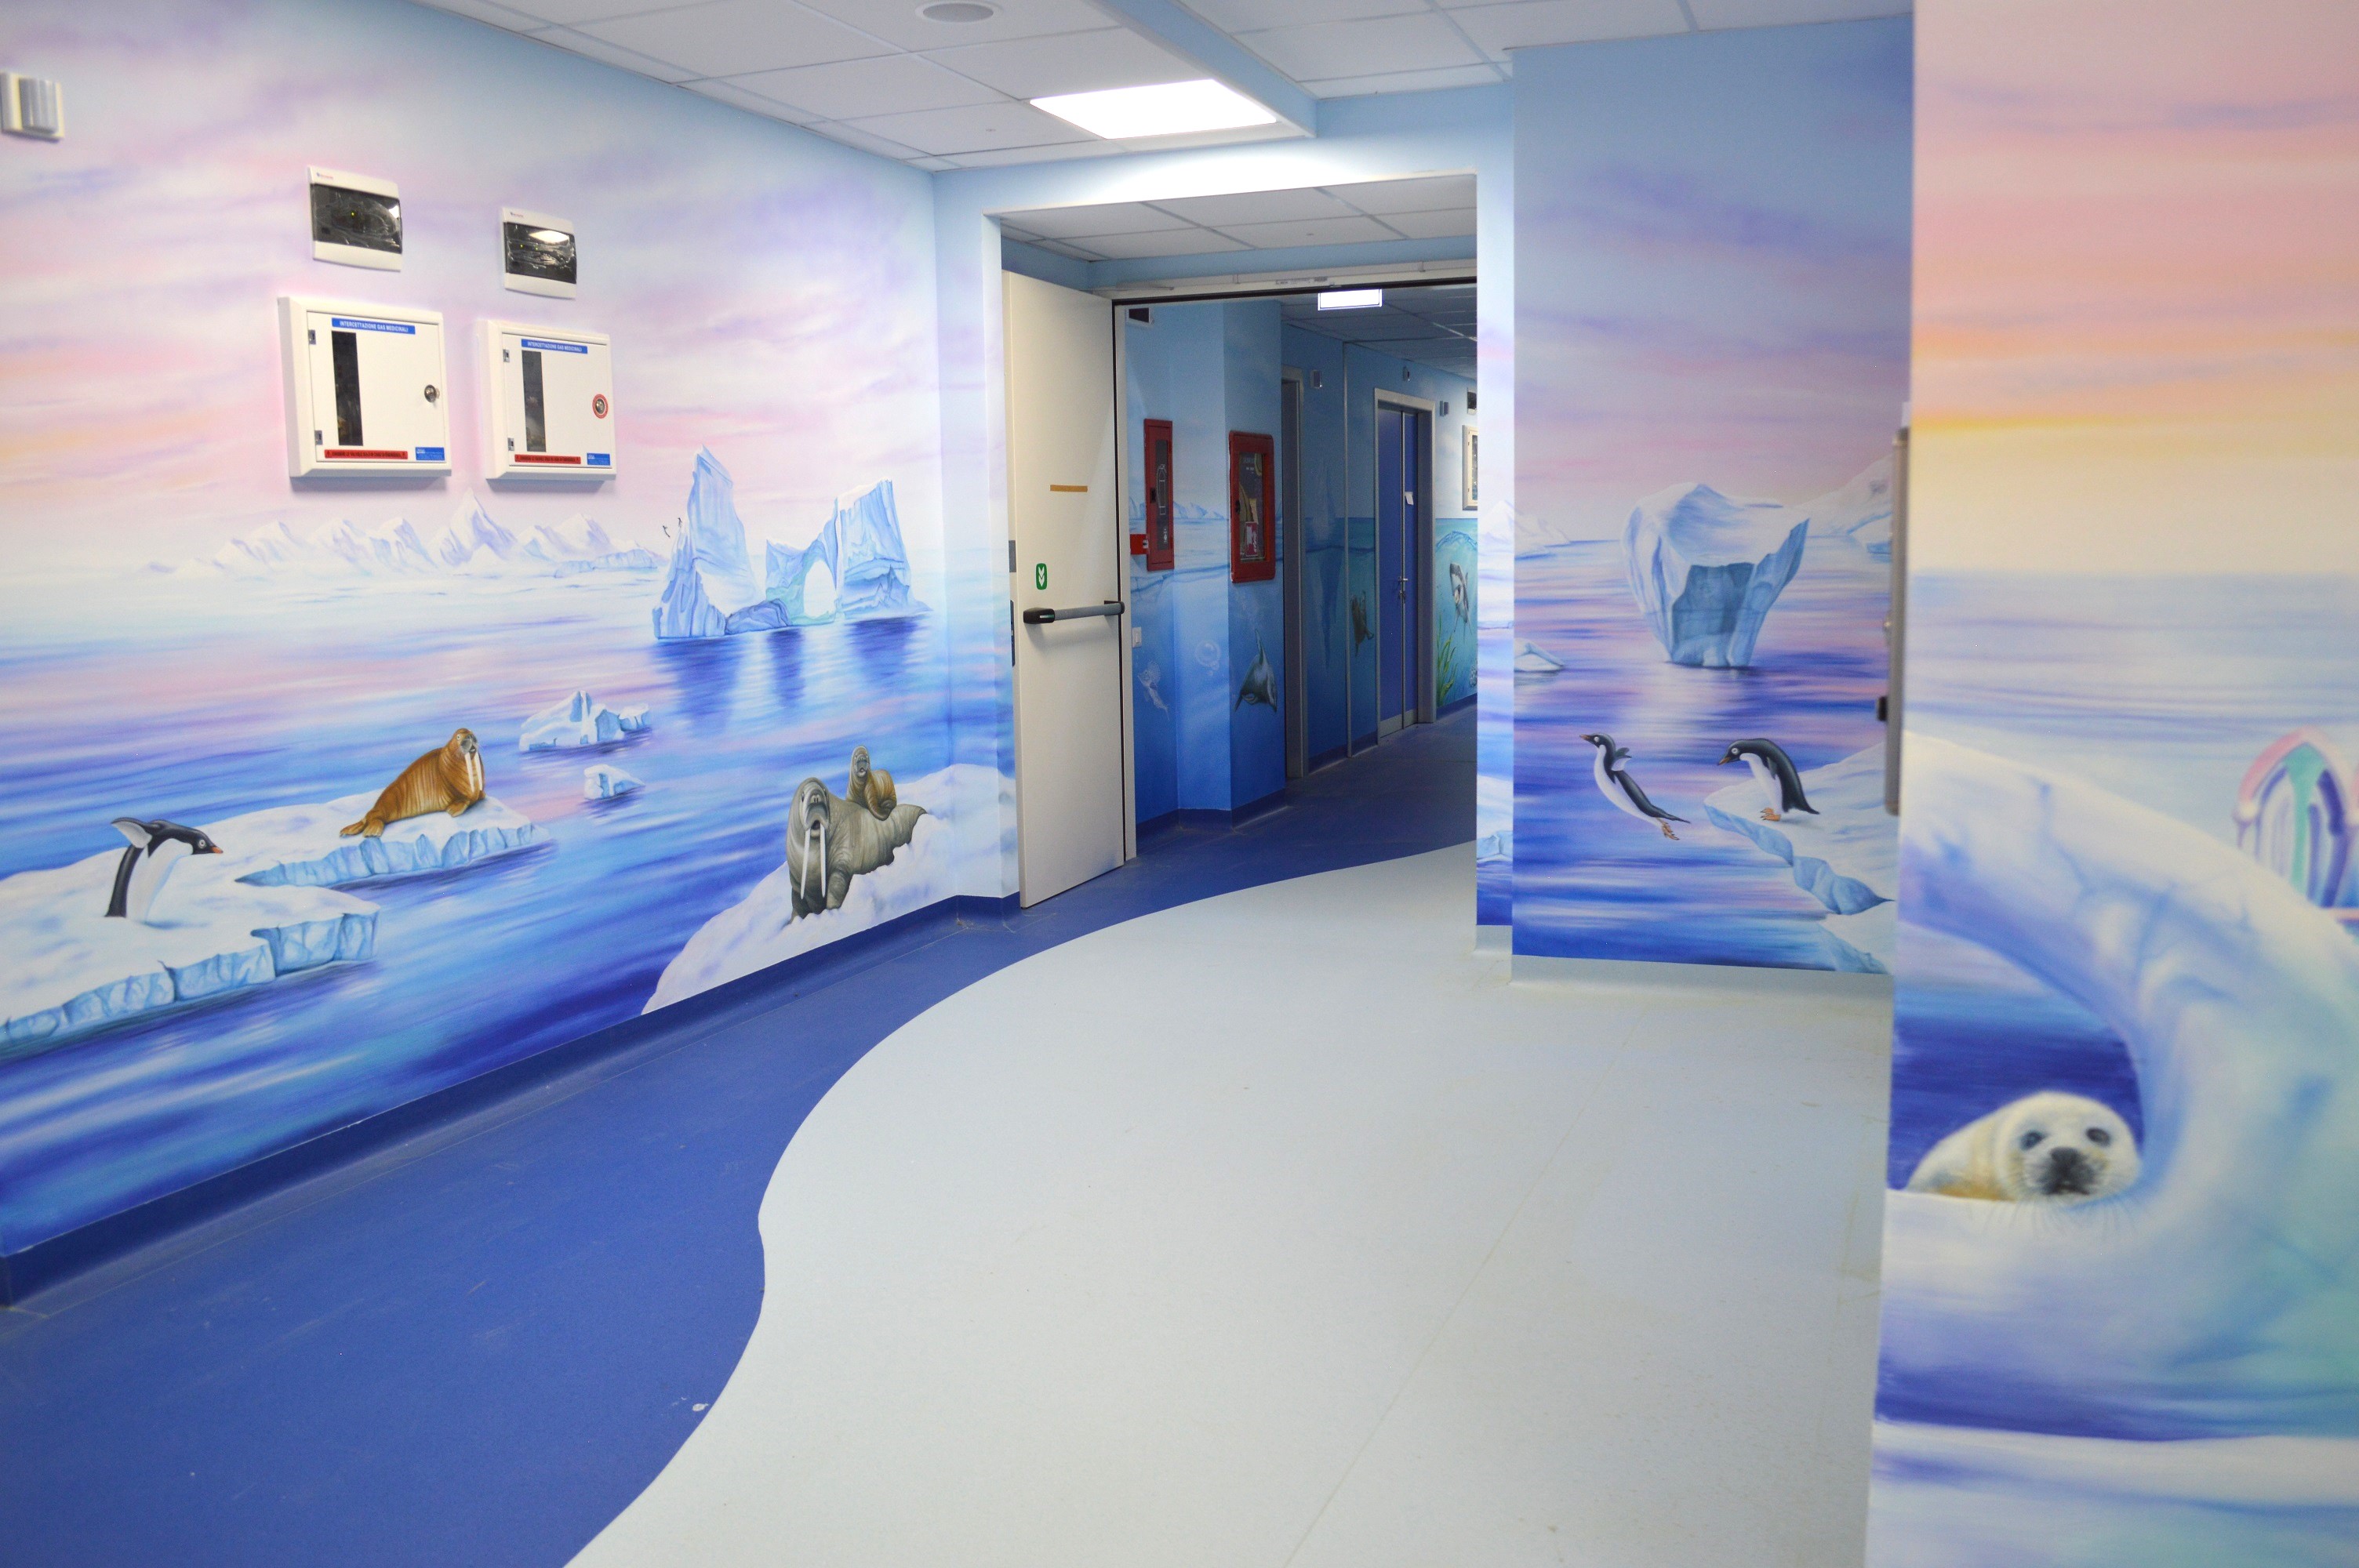 Dal 19 marzo il reparto di Pediatria dell’Ospedale di Tradate sarà attivo nella nuova sede, appena inaugurata